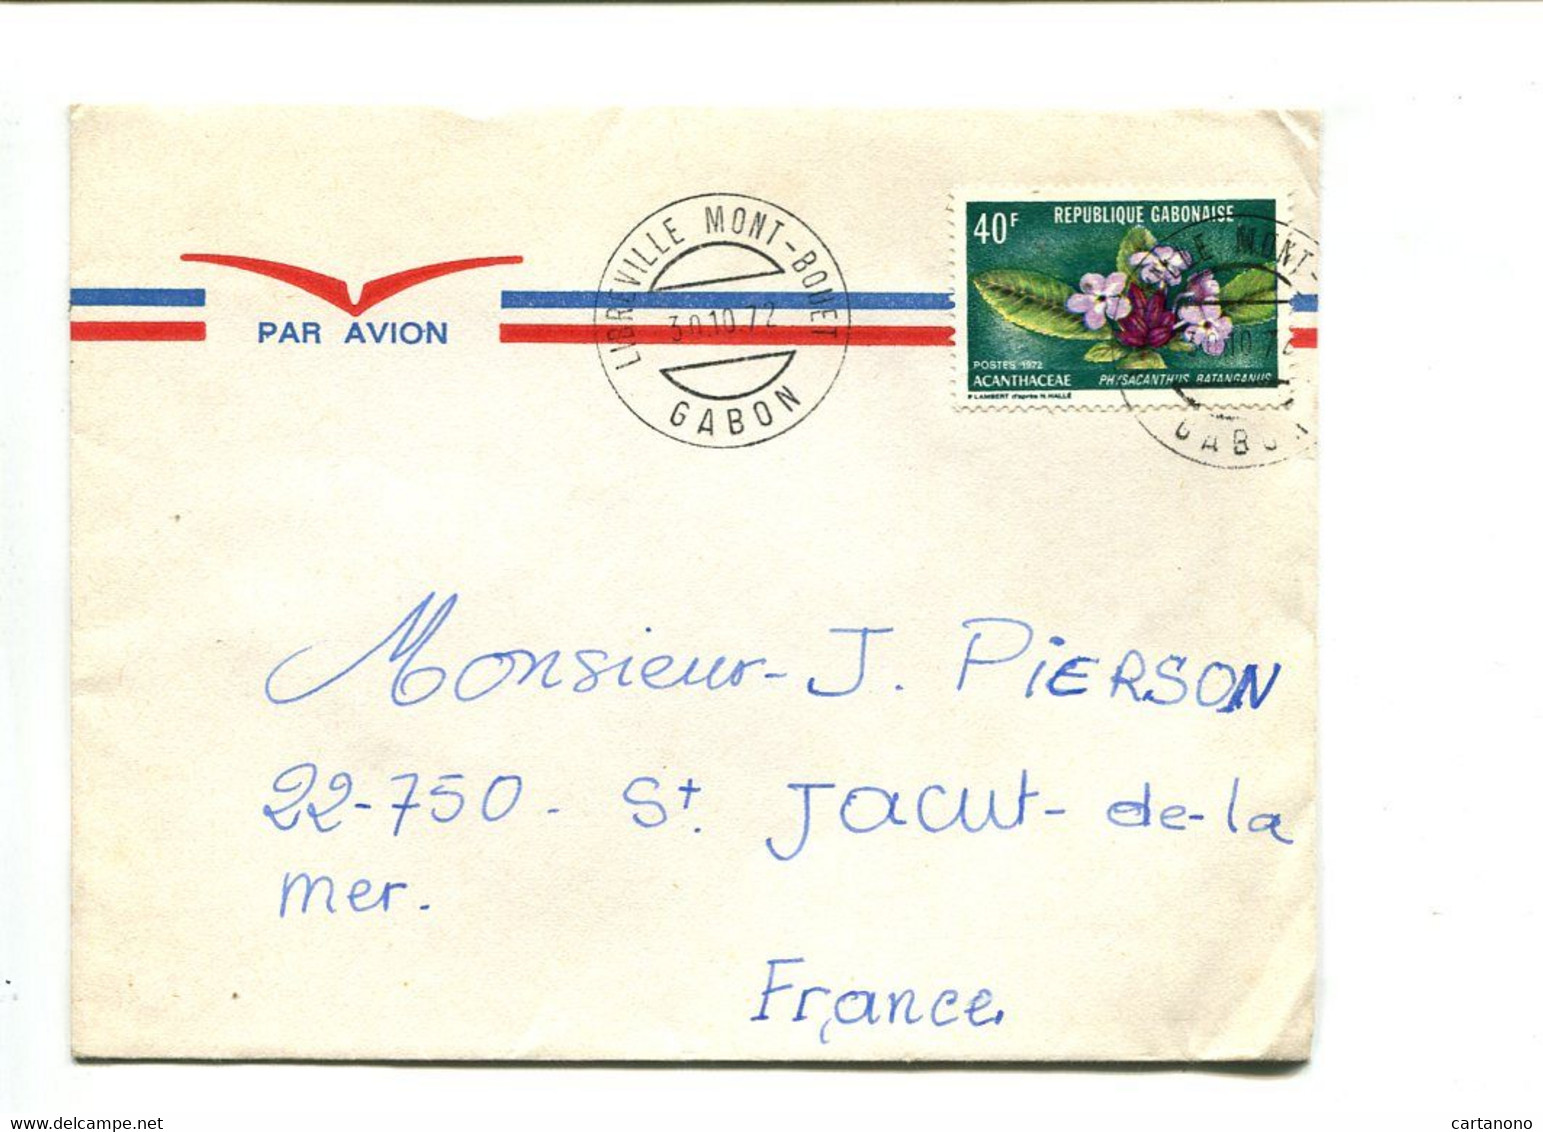 GABON Libreville Mont Bouet 1975  - Affranchissement Seul Sur Lettre Par Avion - Fleur - Gabon